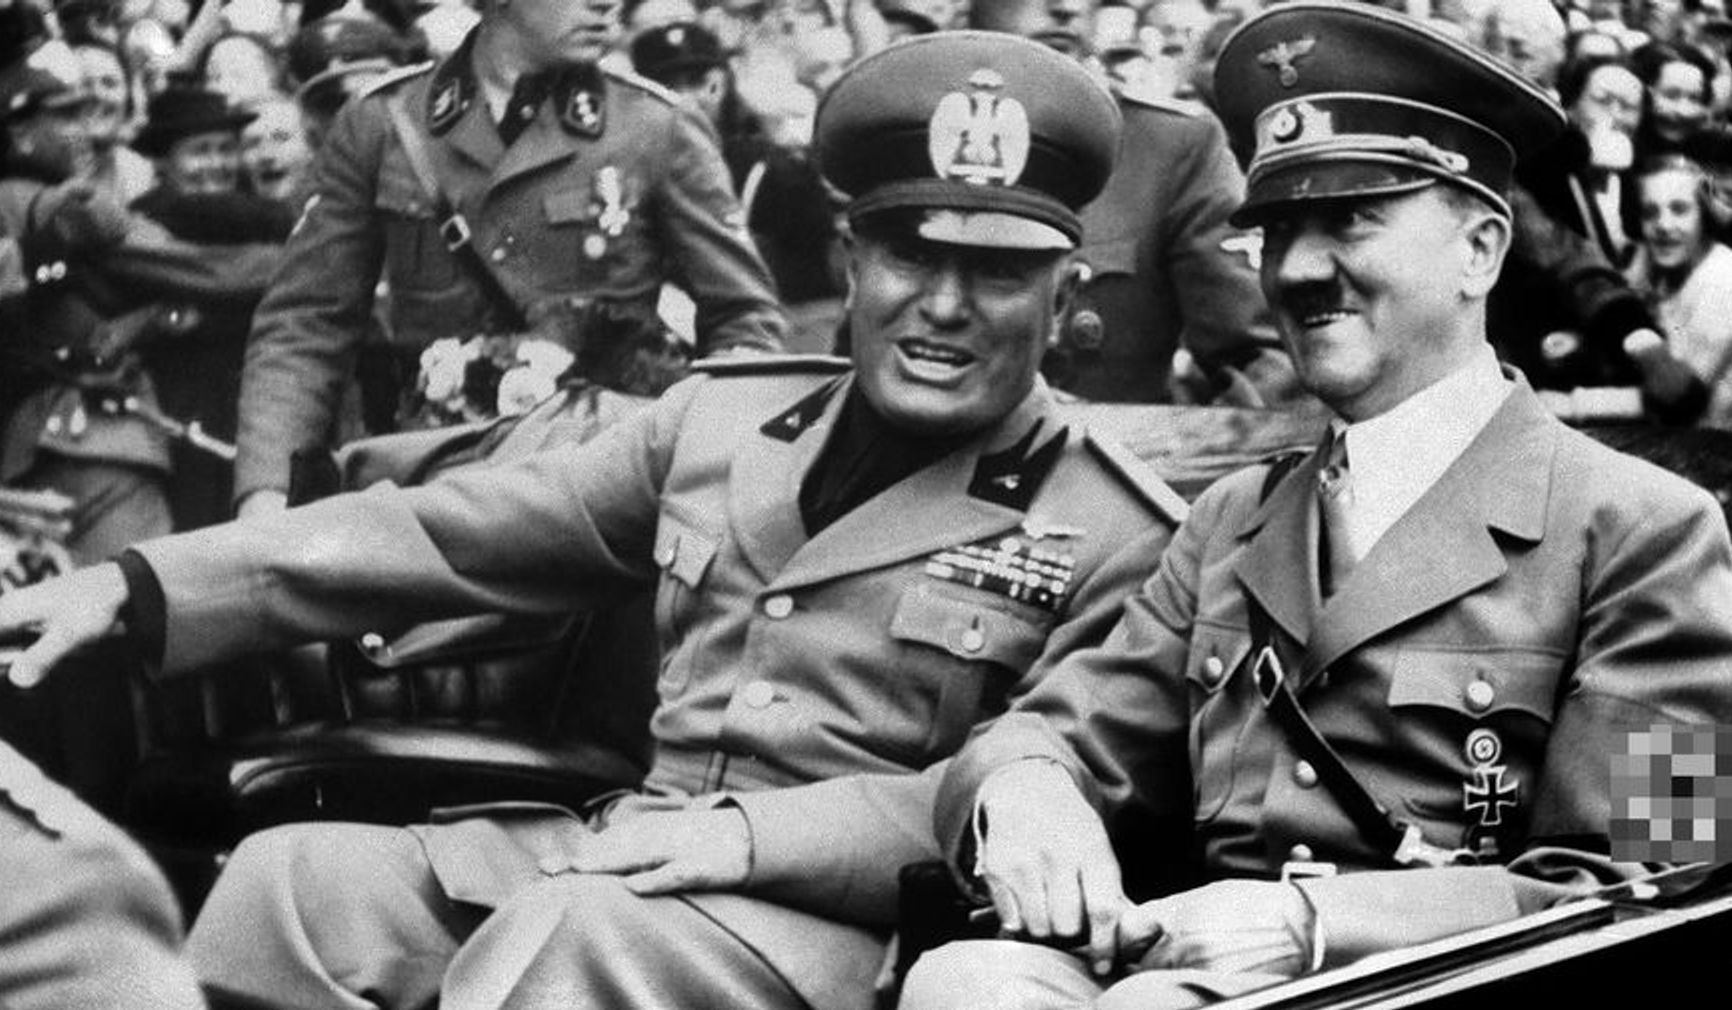 Бенито Муссолини и Адольф Гитлер